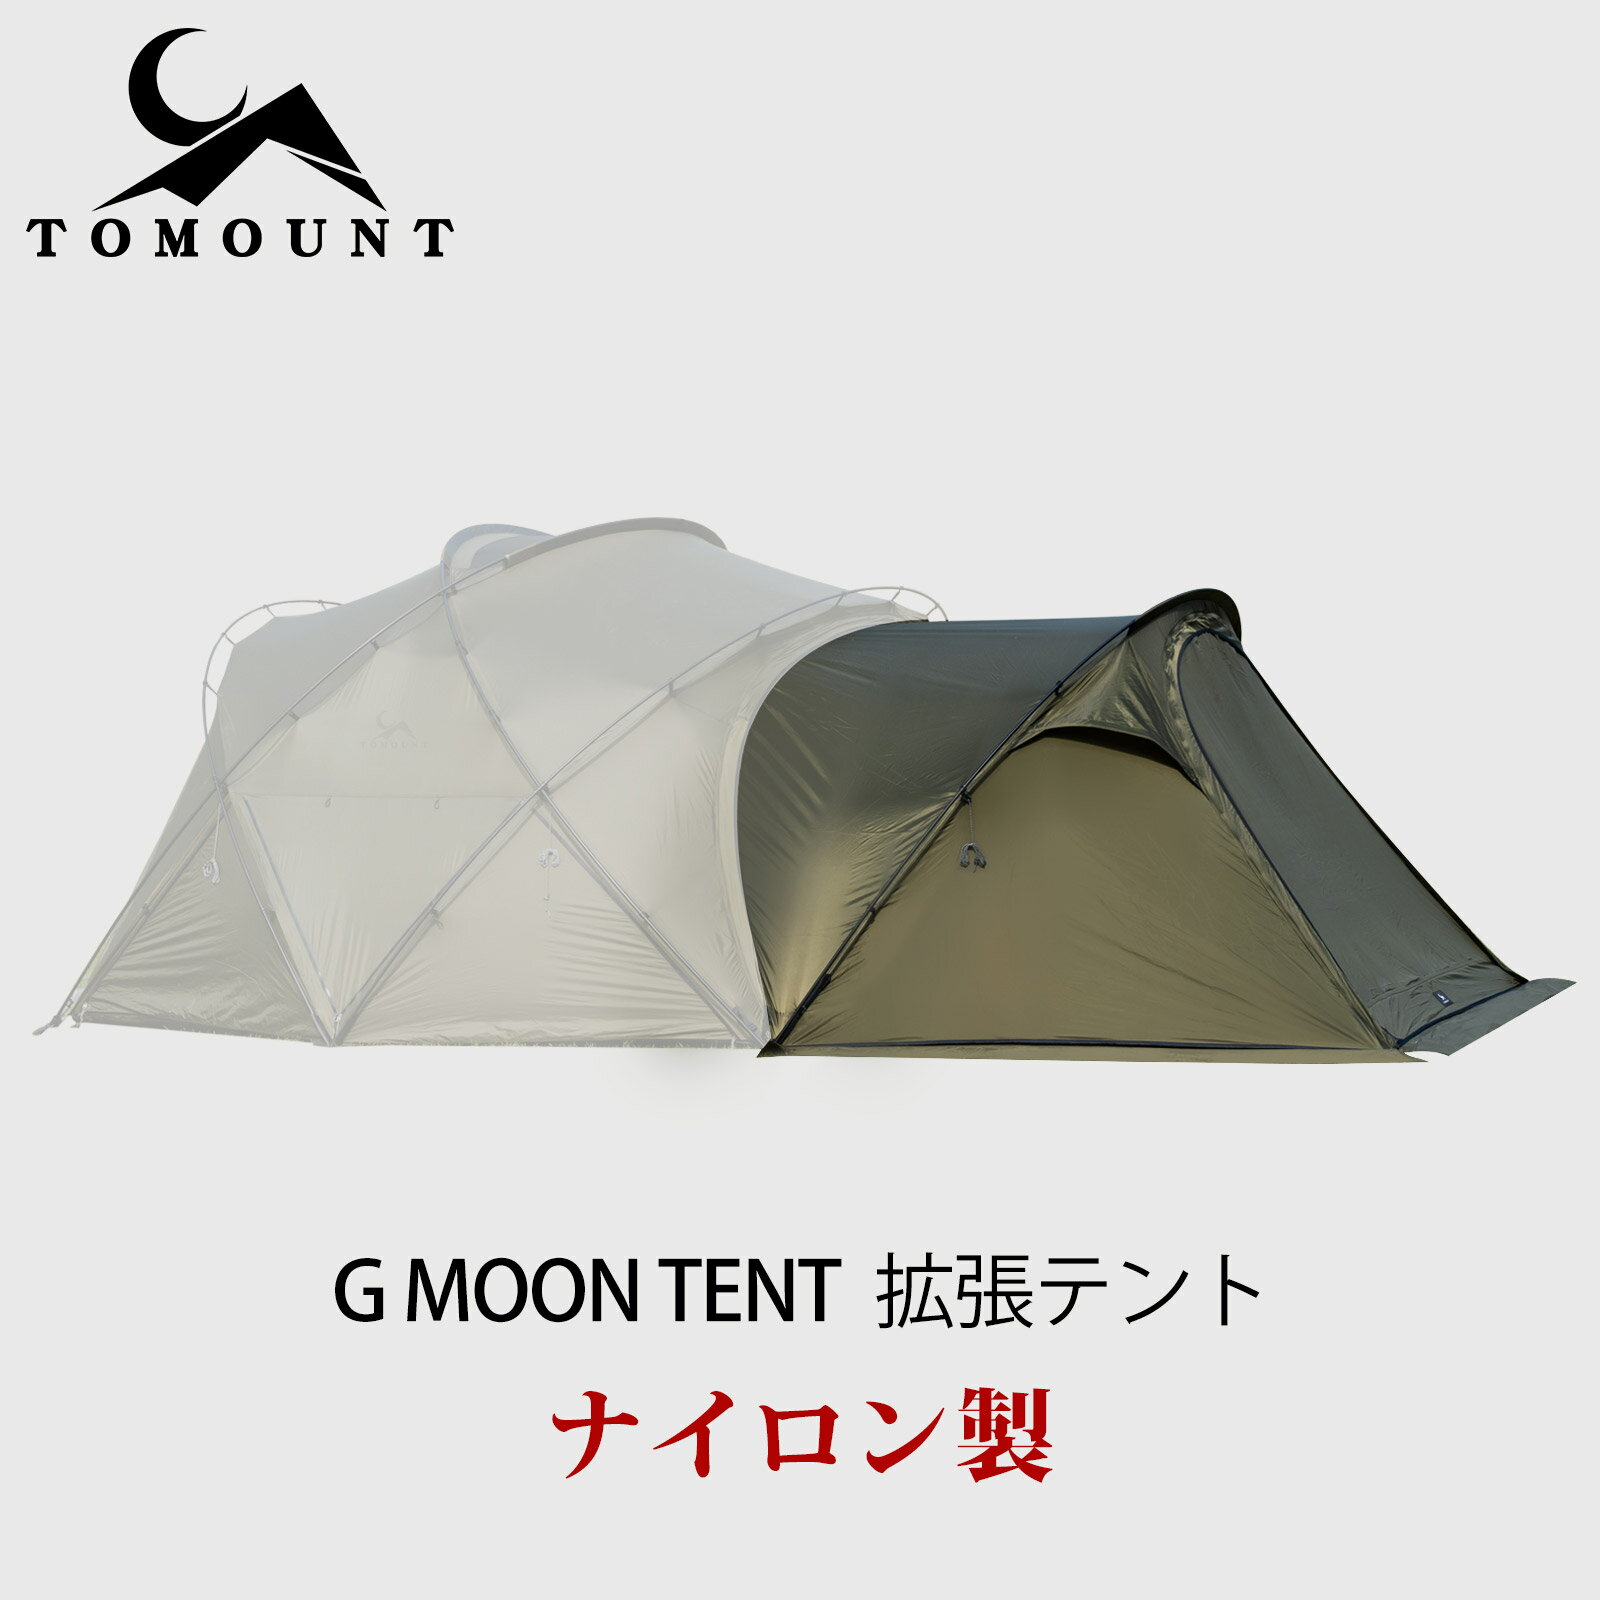 TOMOUNT G moon tent 拡張テント インナーテントなし 